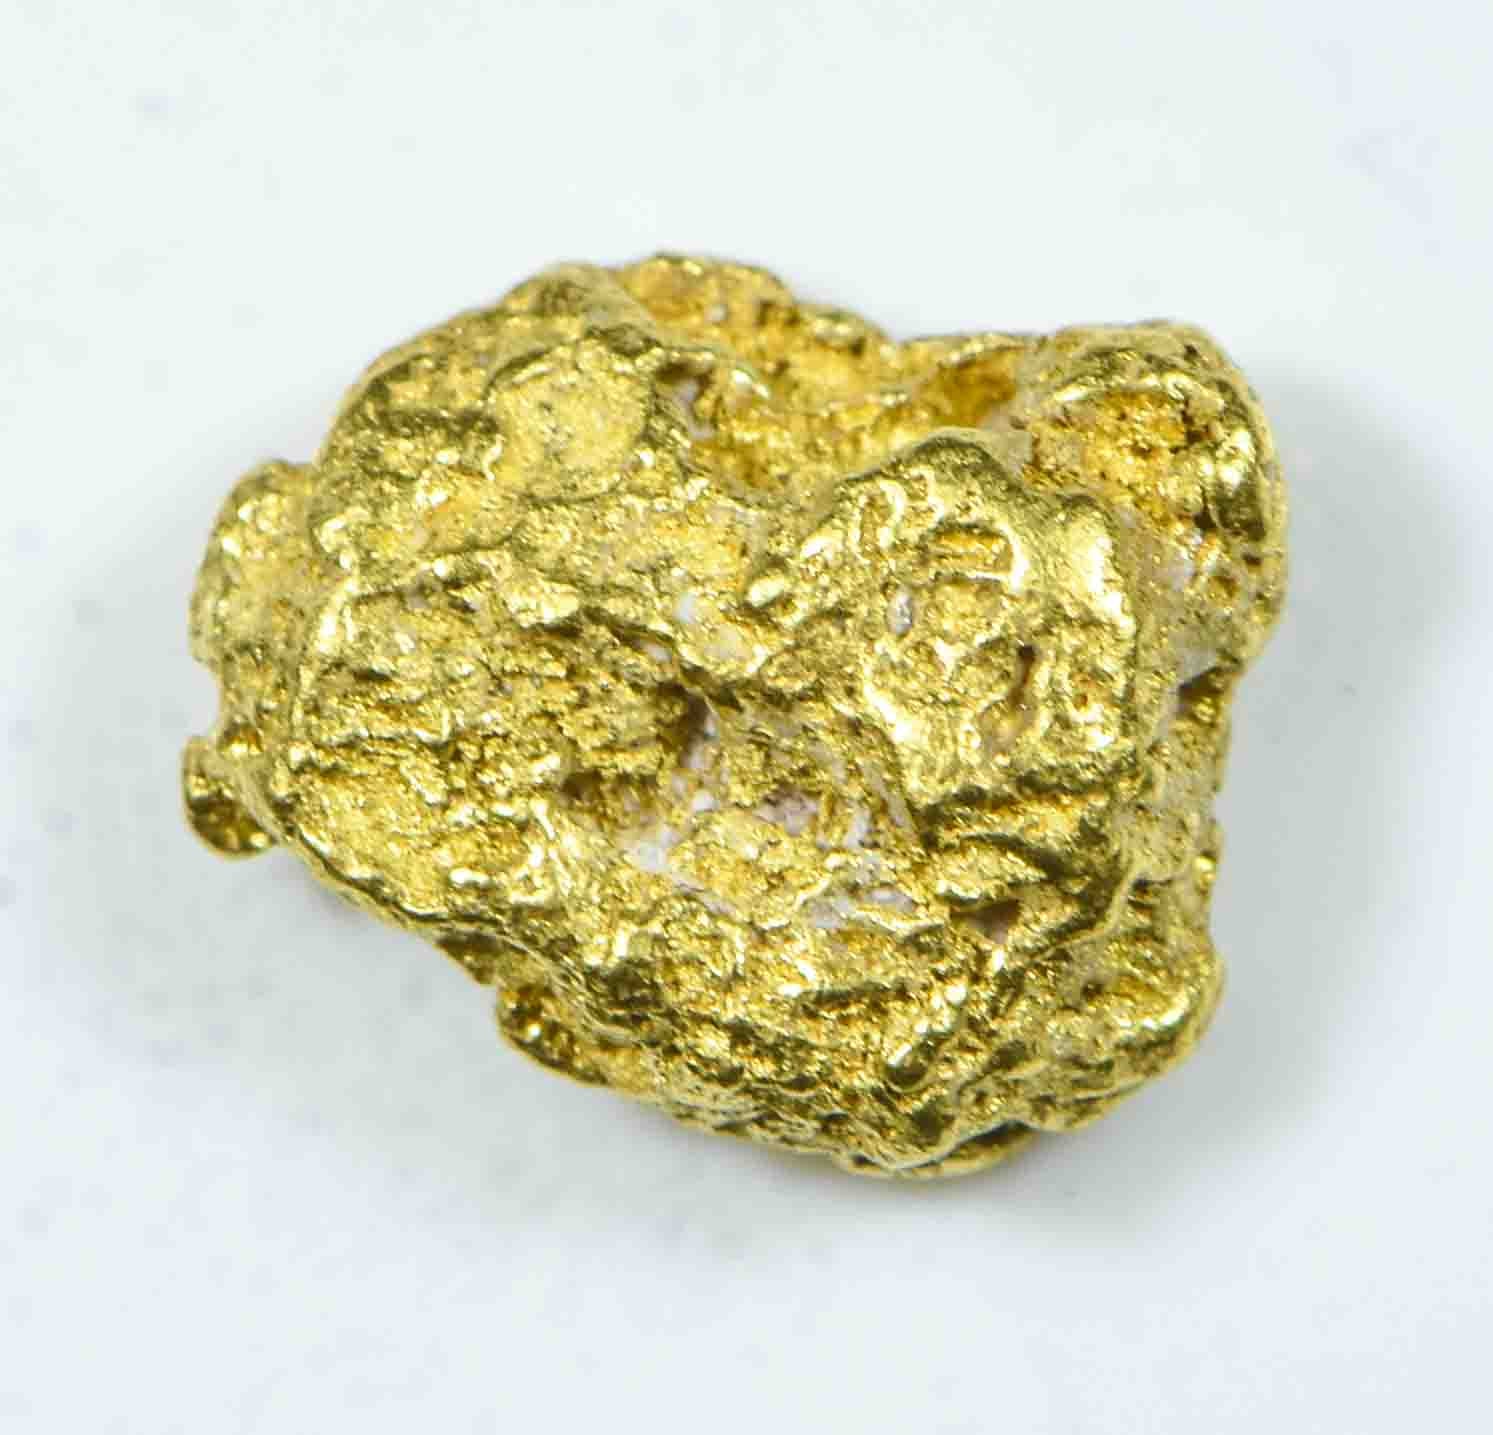 #74 Alaskan BC Natural Gold Nugget 1.24 Grams Genuine